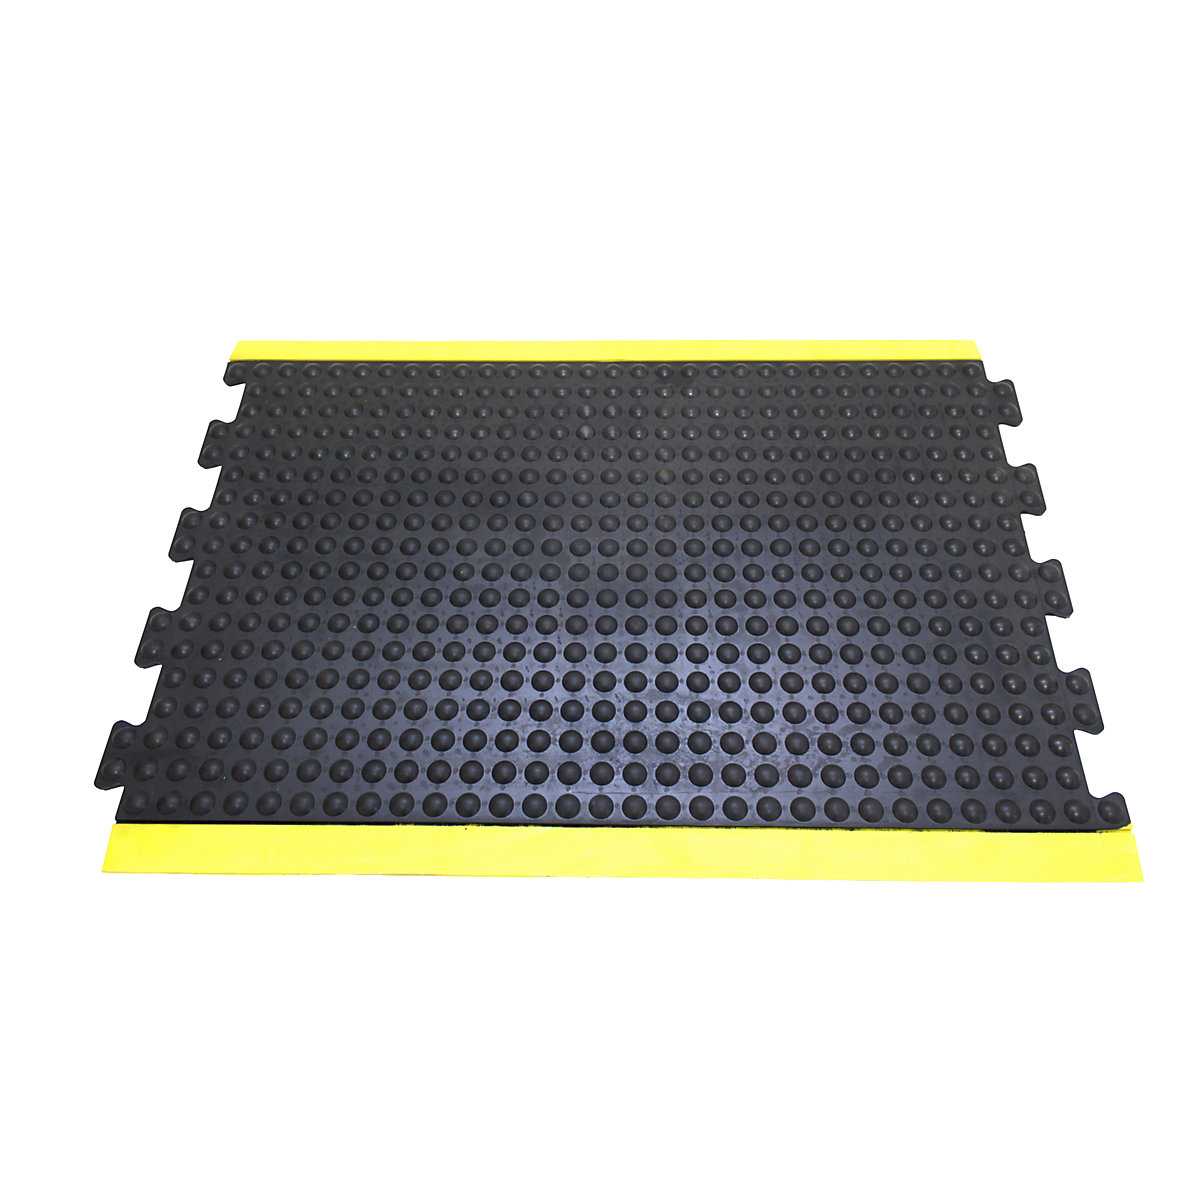 Anti-vermoeidheidsmat Bubblemat safety – COBA, l x b x h = 1200 x 900 x 14 mm, zwart/geel, middenelement-4